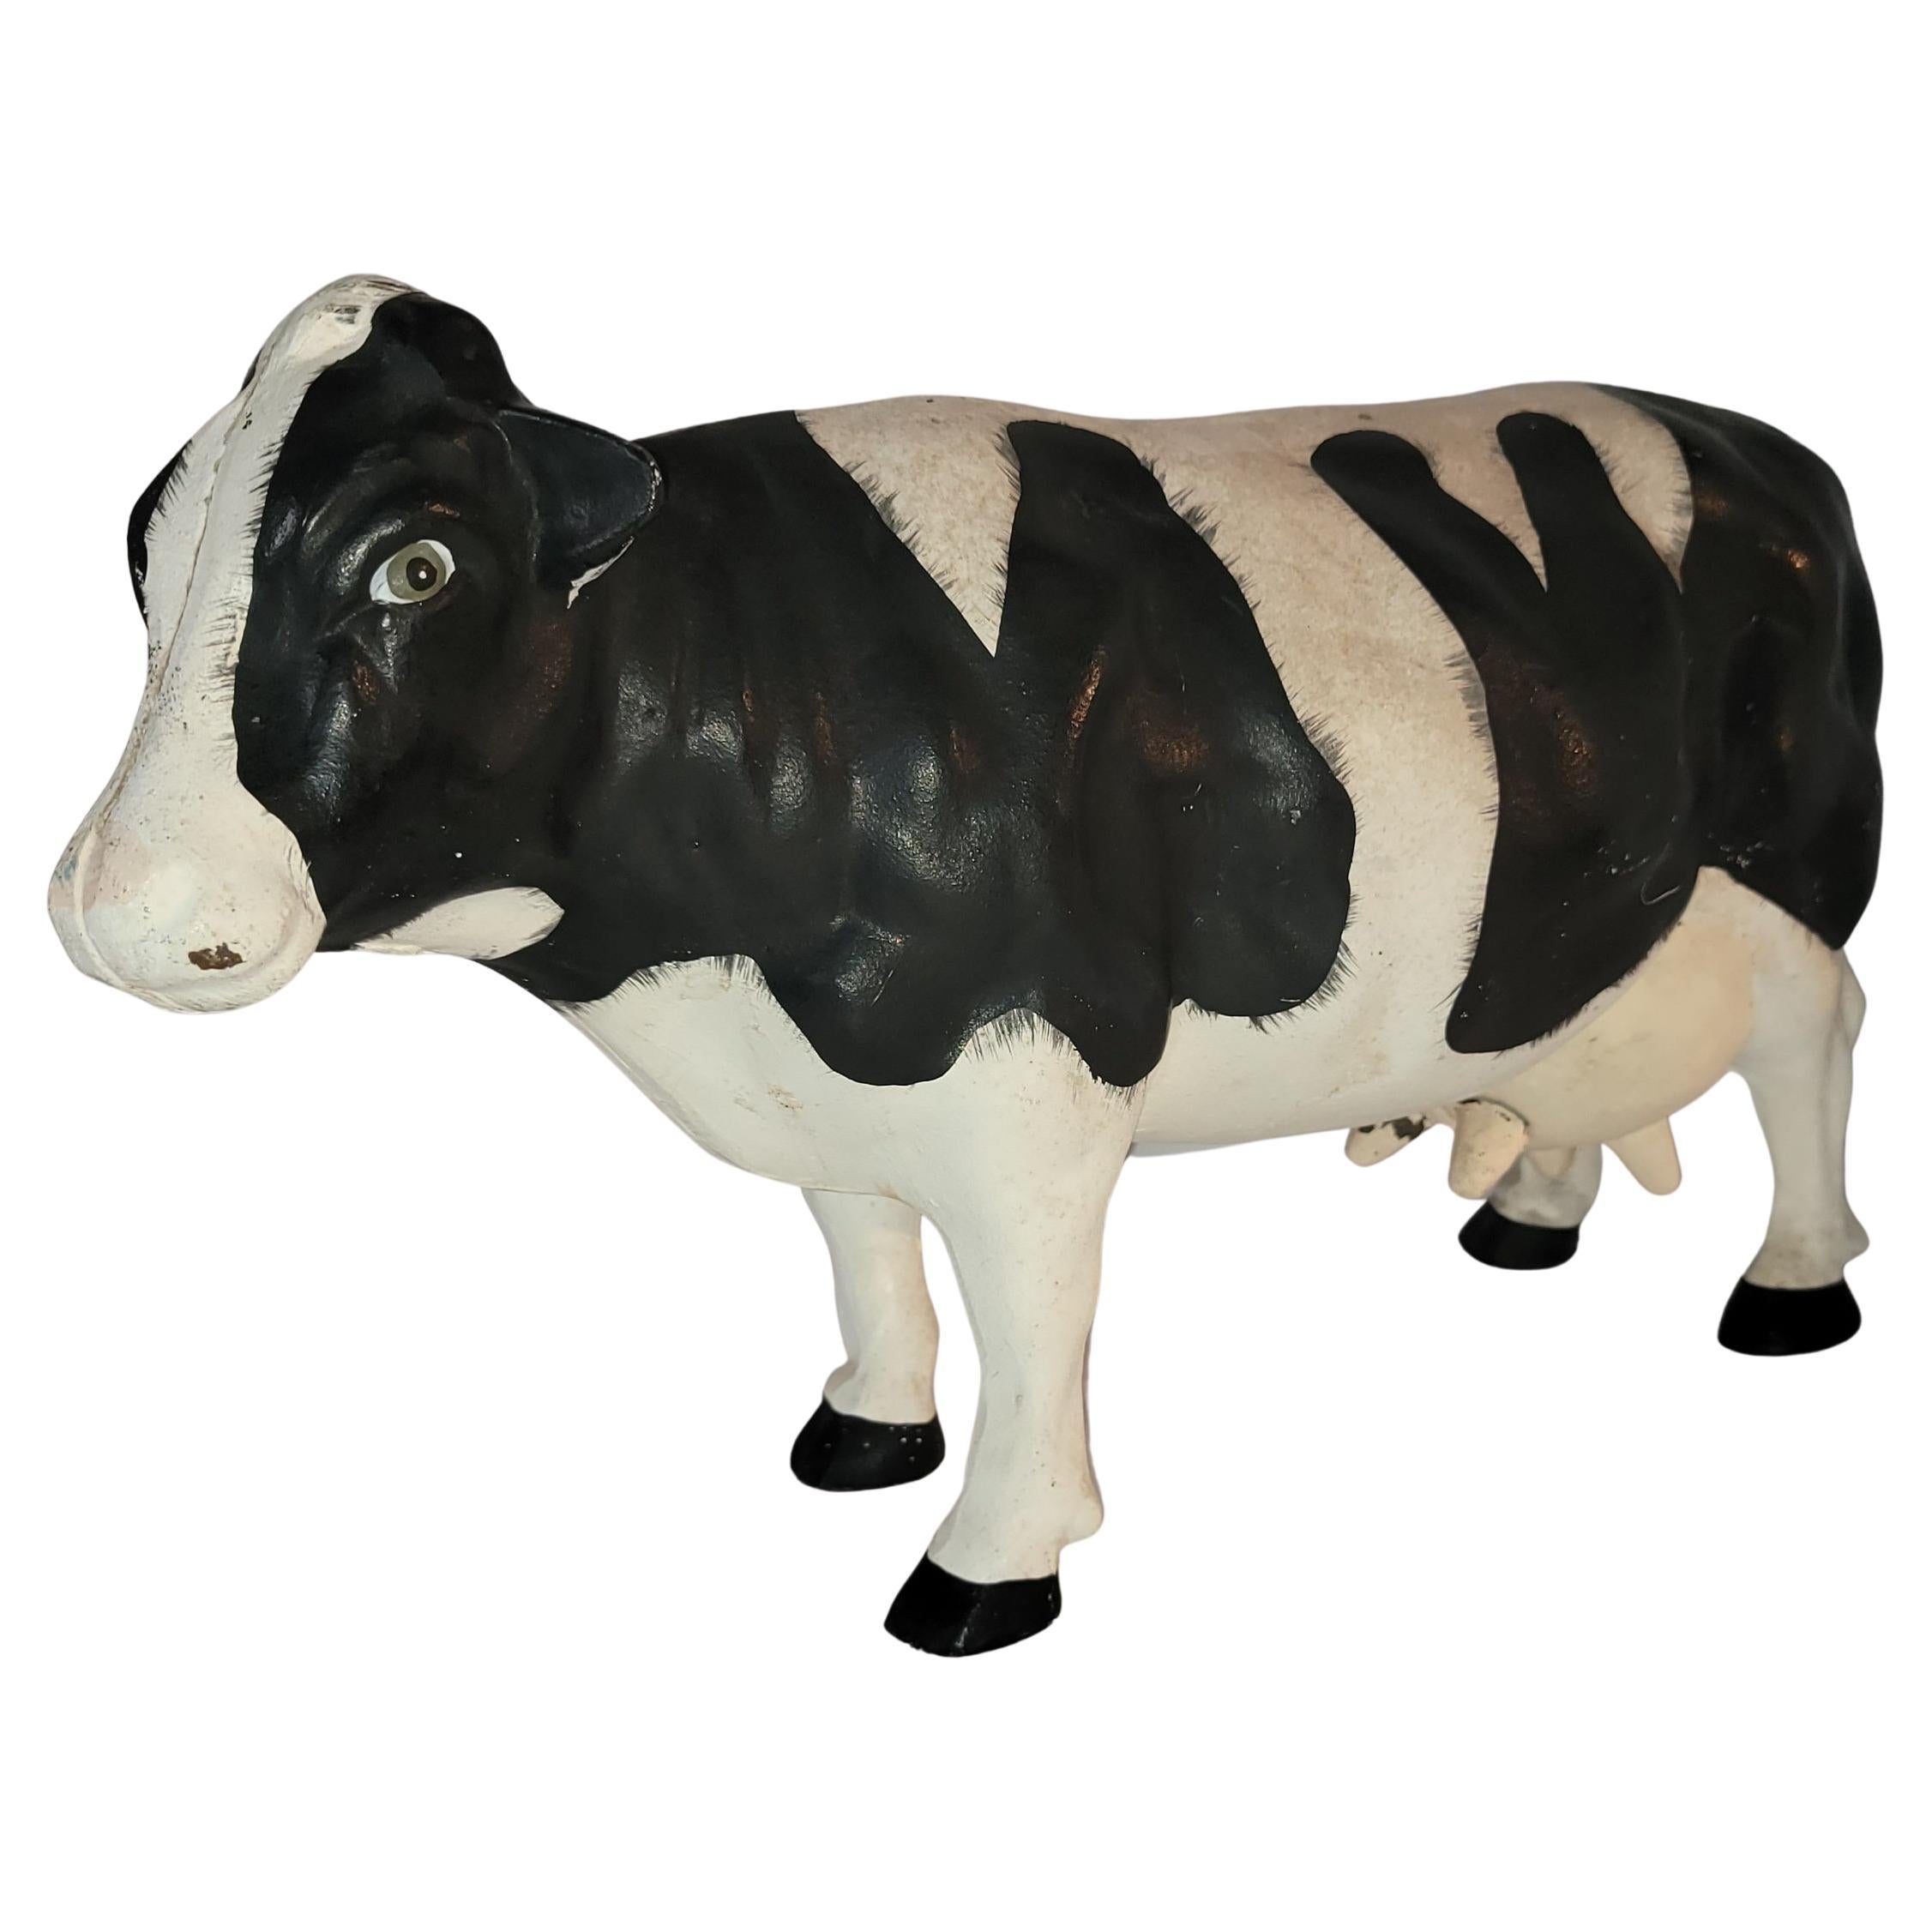 Butoir de porte original en forme de vache peinte